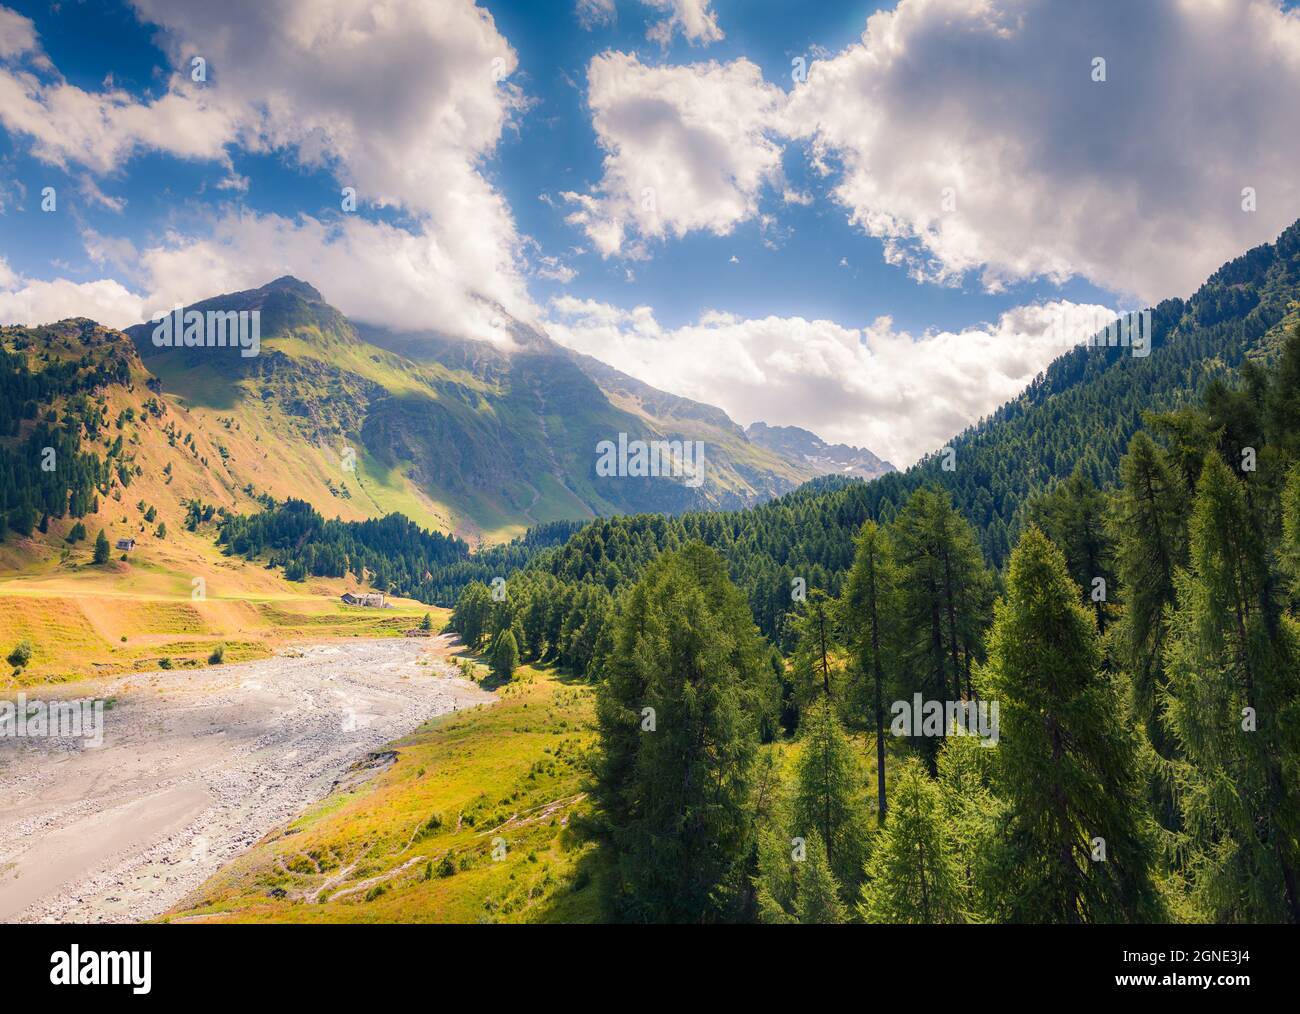 Pittoresca vista estiva dalla cima del passo Maloja. Colorata scena mattutina nelle Alpi svizzere, alta Engadina nel cantone dei Grigioni, Svizzera, Europa Foto Stock